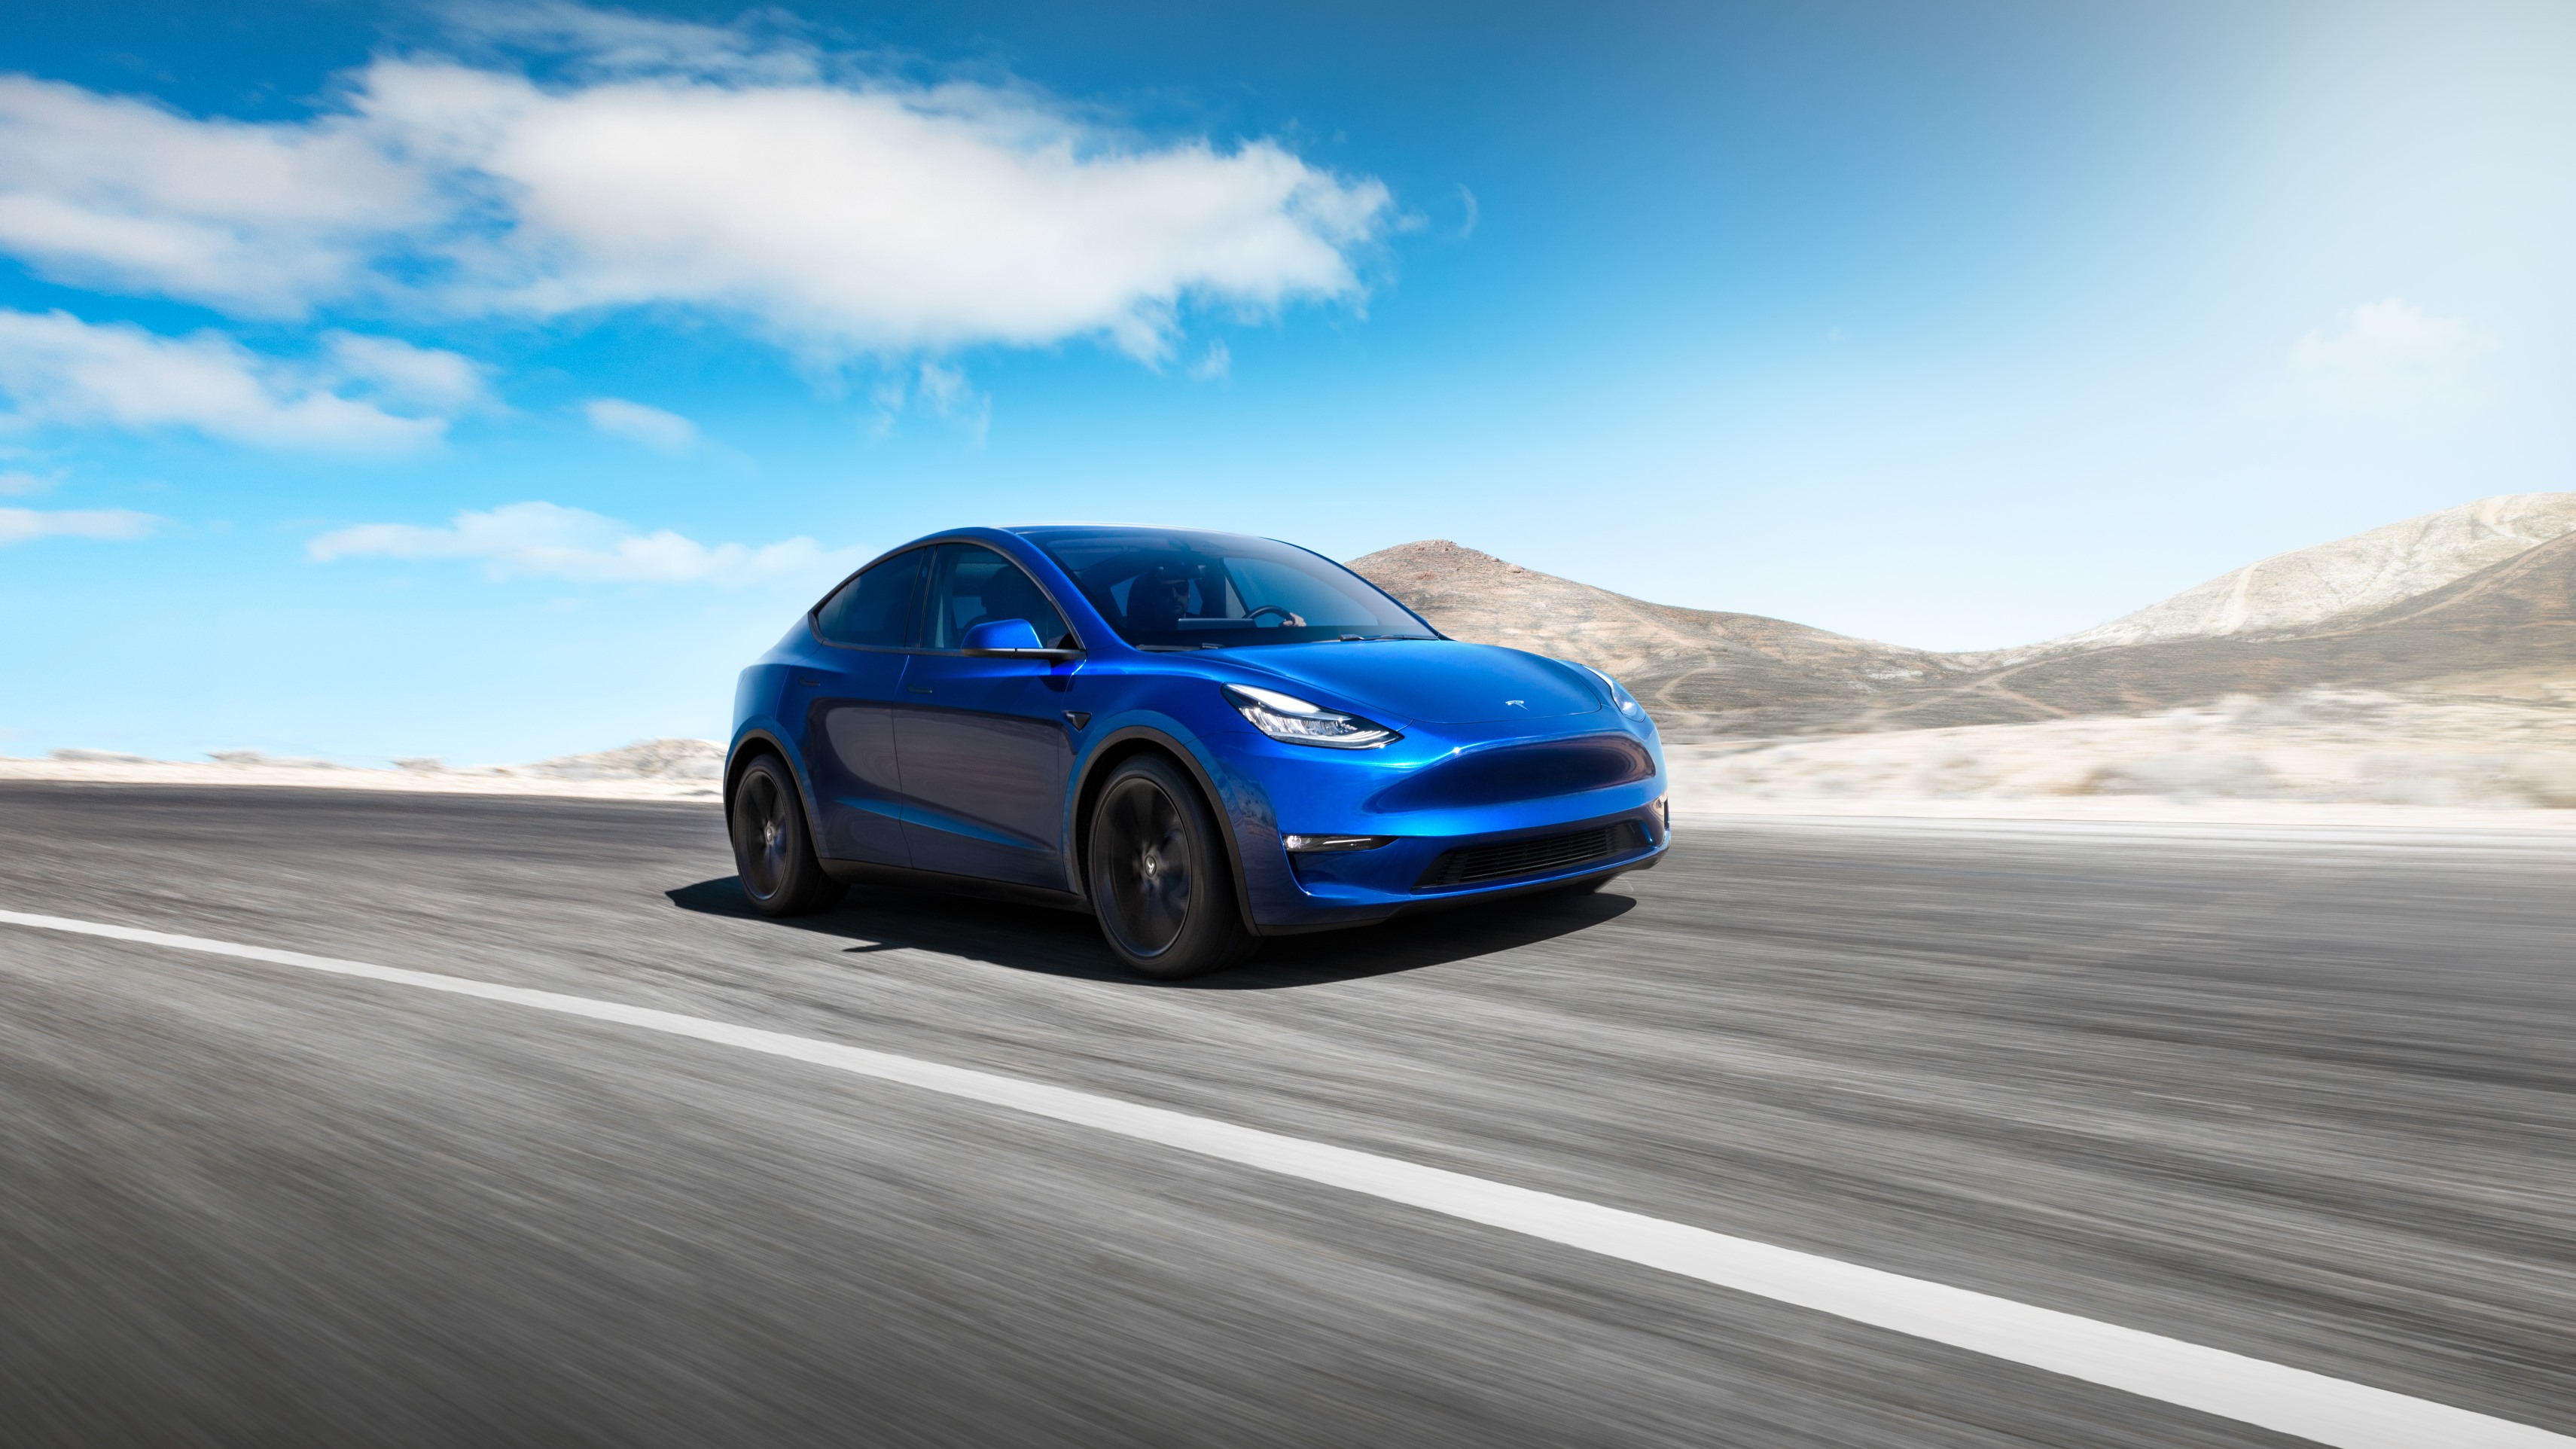 Le Tesla Model Y est désormais doté de systèmes de sécurité sophistiqués qui rendent fous les voleurs. © Tesla